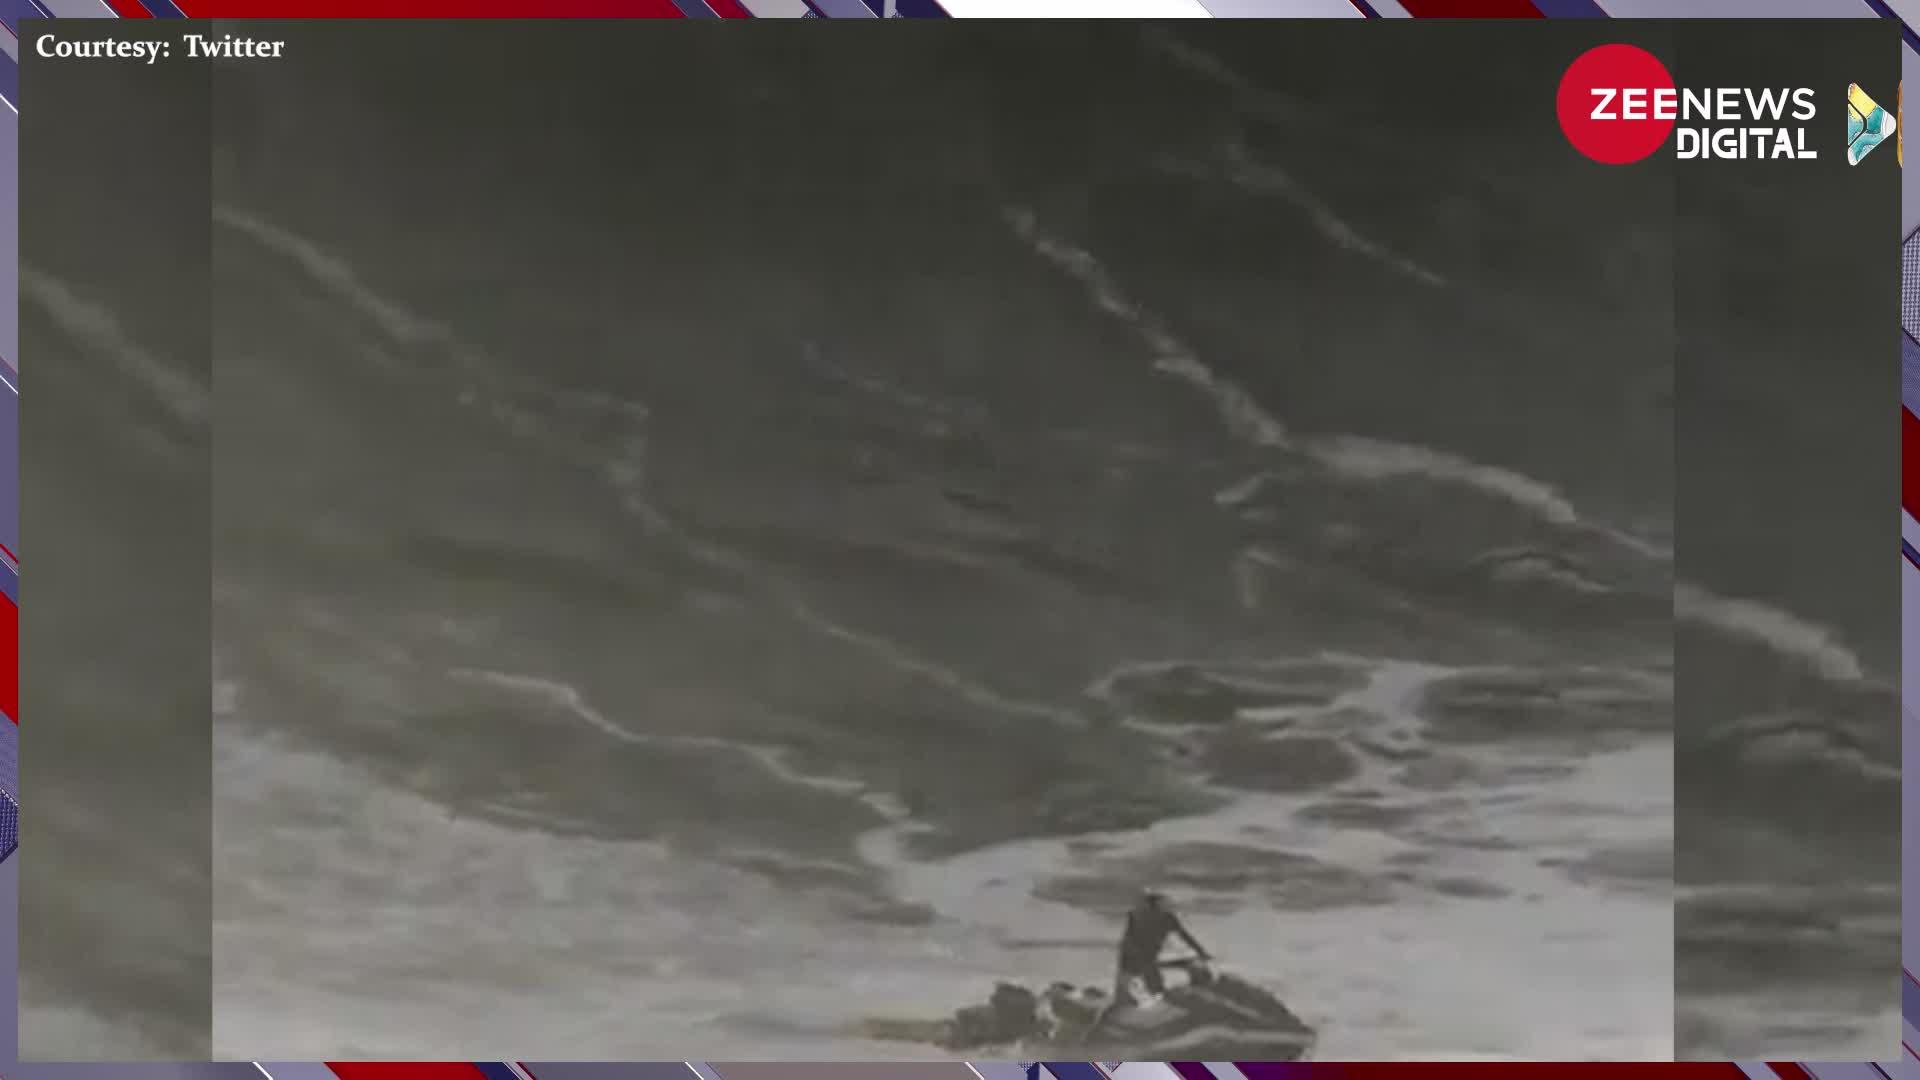 Shocking Video: समुद्र में डूब रहा था शख्स, अचानक हुआ करिश्मा और बच गई जान, देखें वीडियो